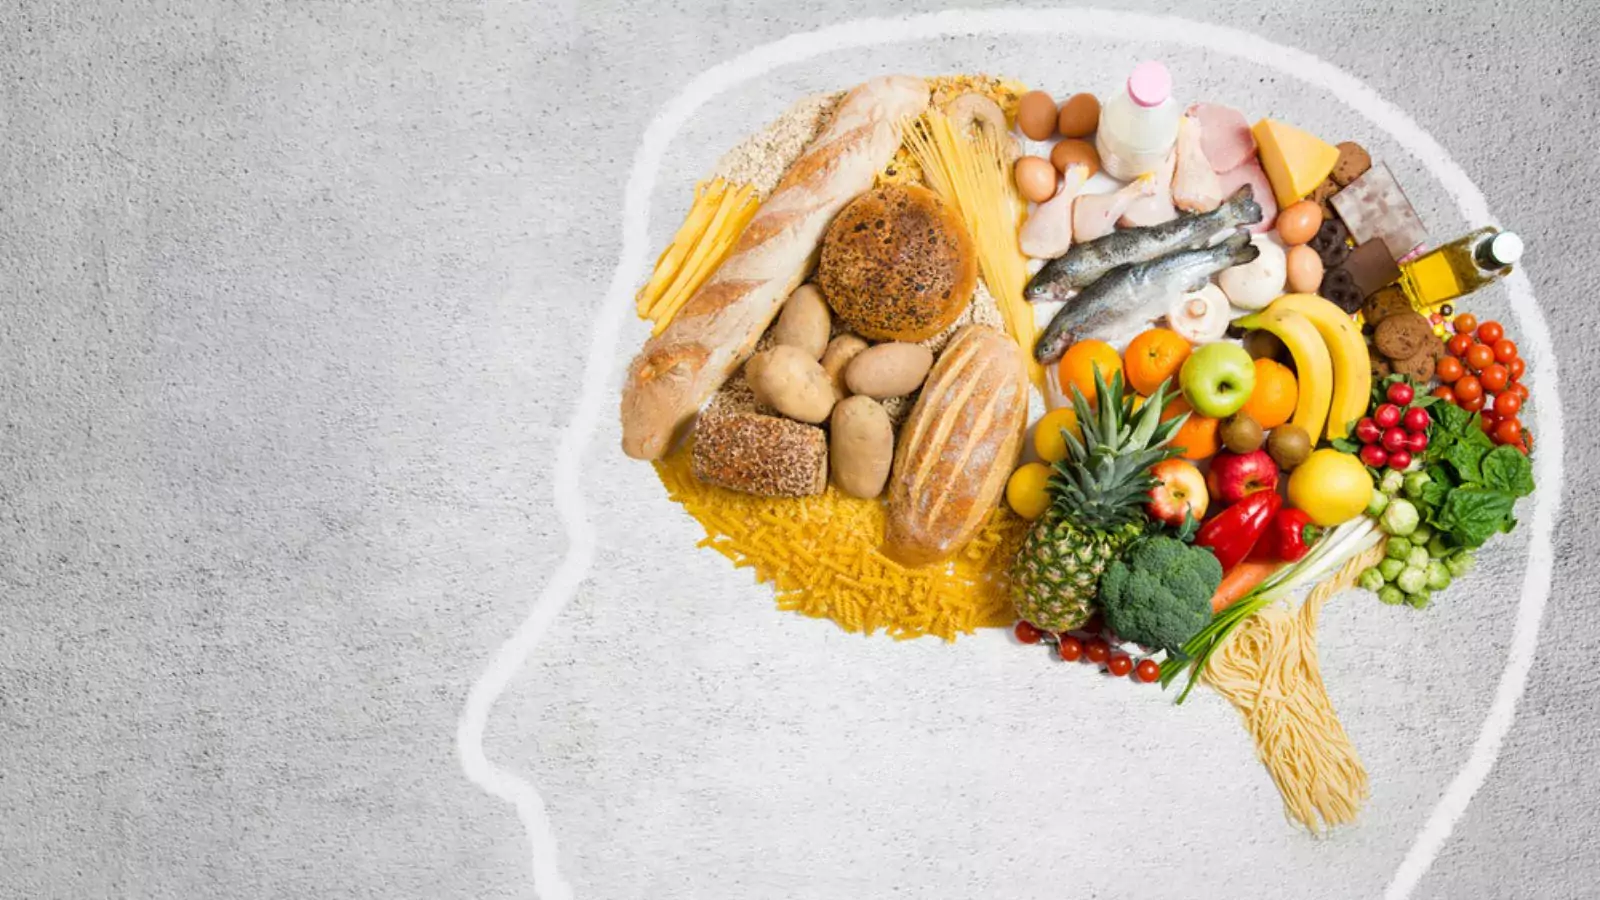 Daha iyi bir zihin için diyet önerileri